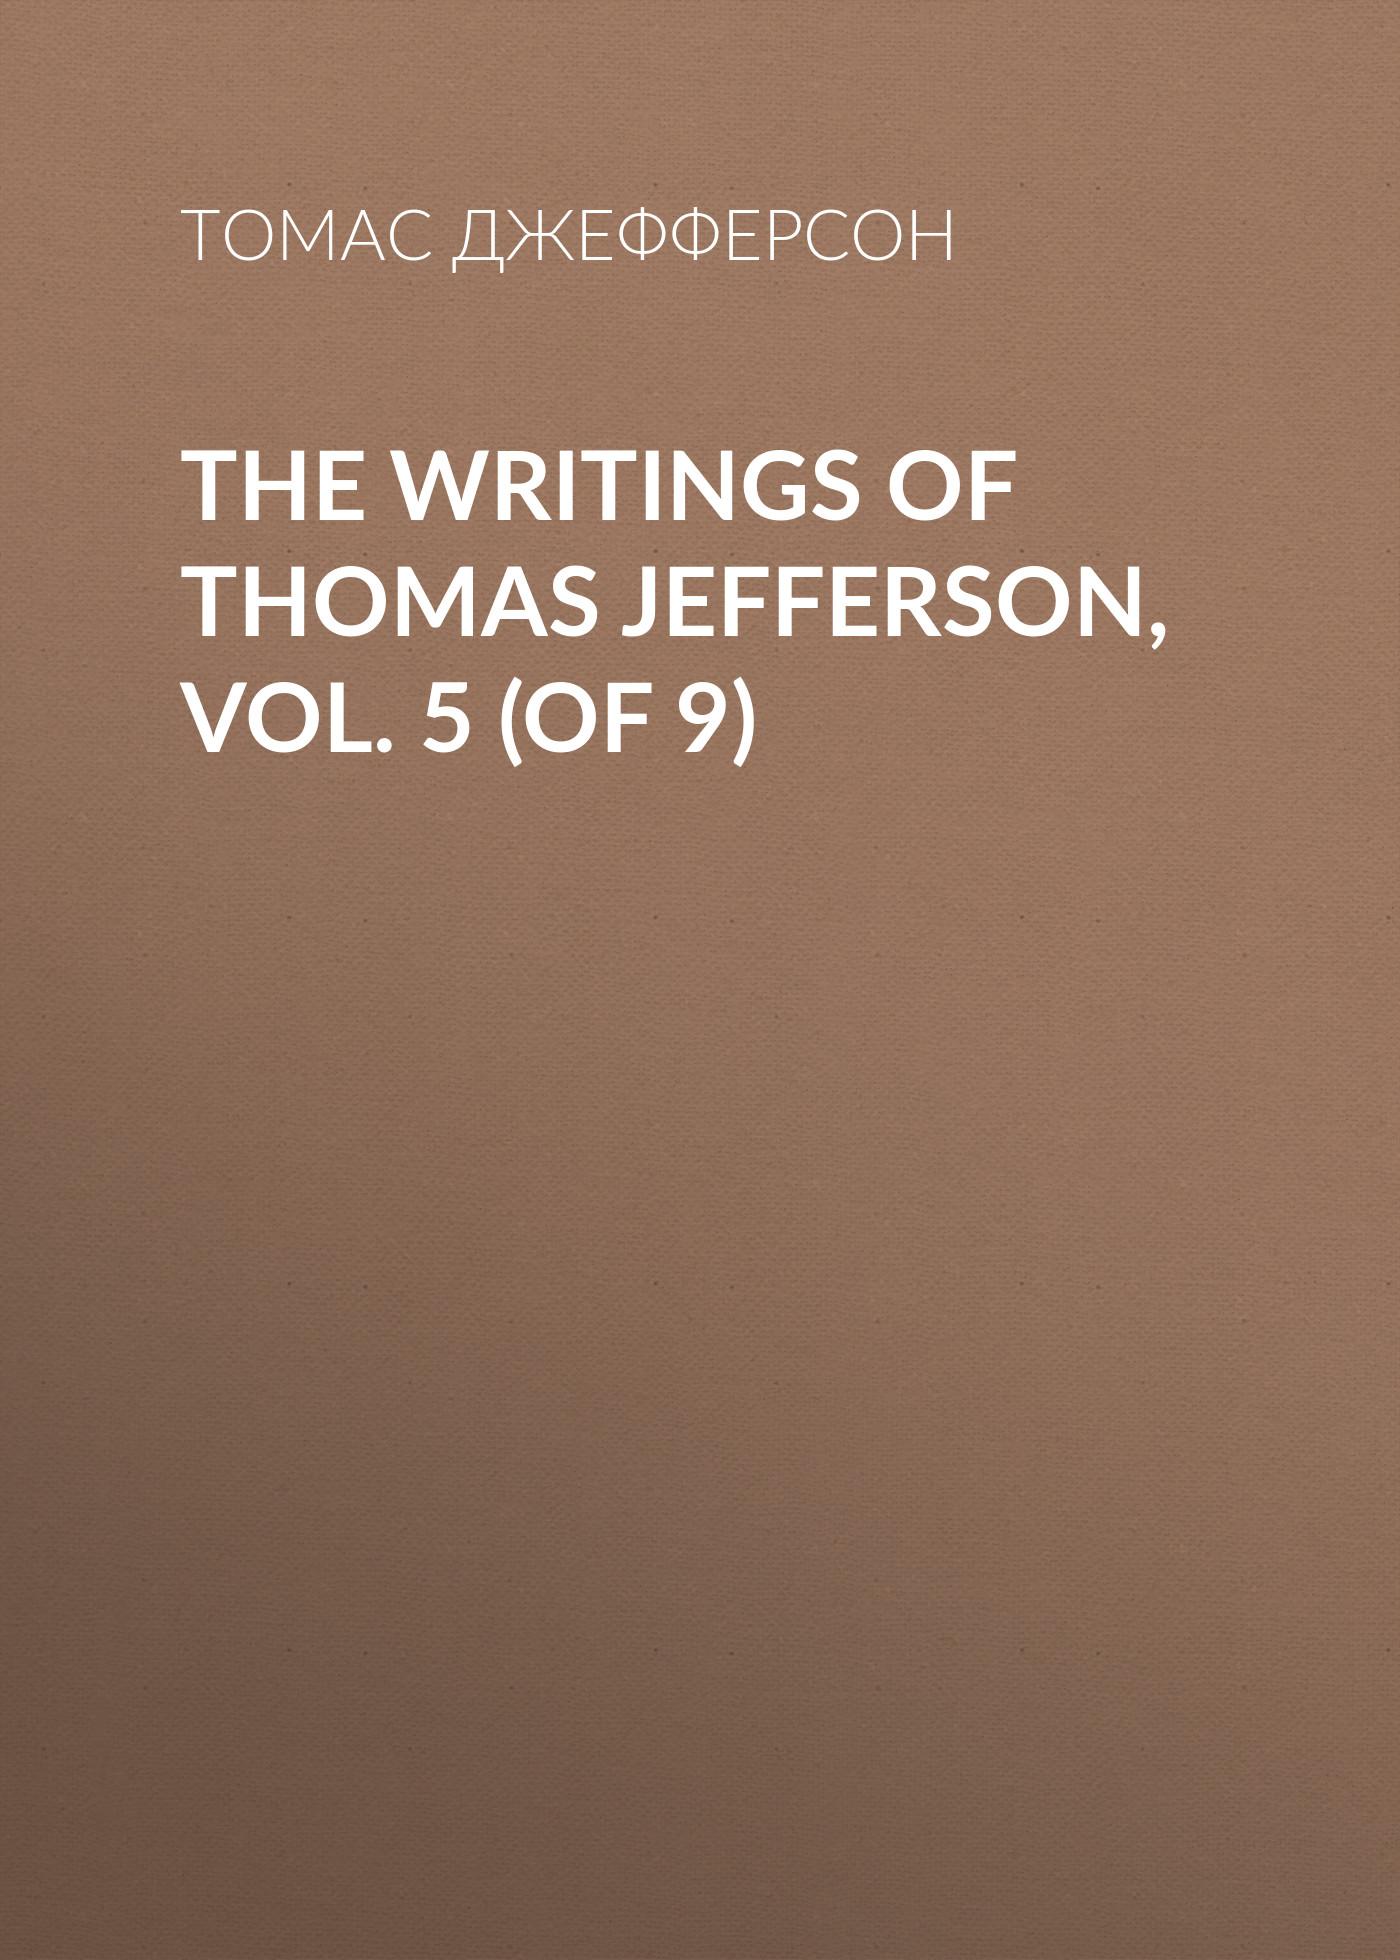 Книга The Writings of Thomas Jefferson, Vol. 5 (of 9) из серии , созданная Томас Джефферсон, может относится к жанру Биографии и Мемуары, Зарубежная старинная литература. Стоимость электронной книги The Writings of Thomas Jefferson, Vol. 5 (of 9) с идентификатором 34839278 составляет 0 руб.